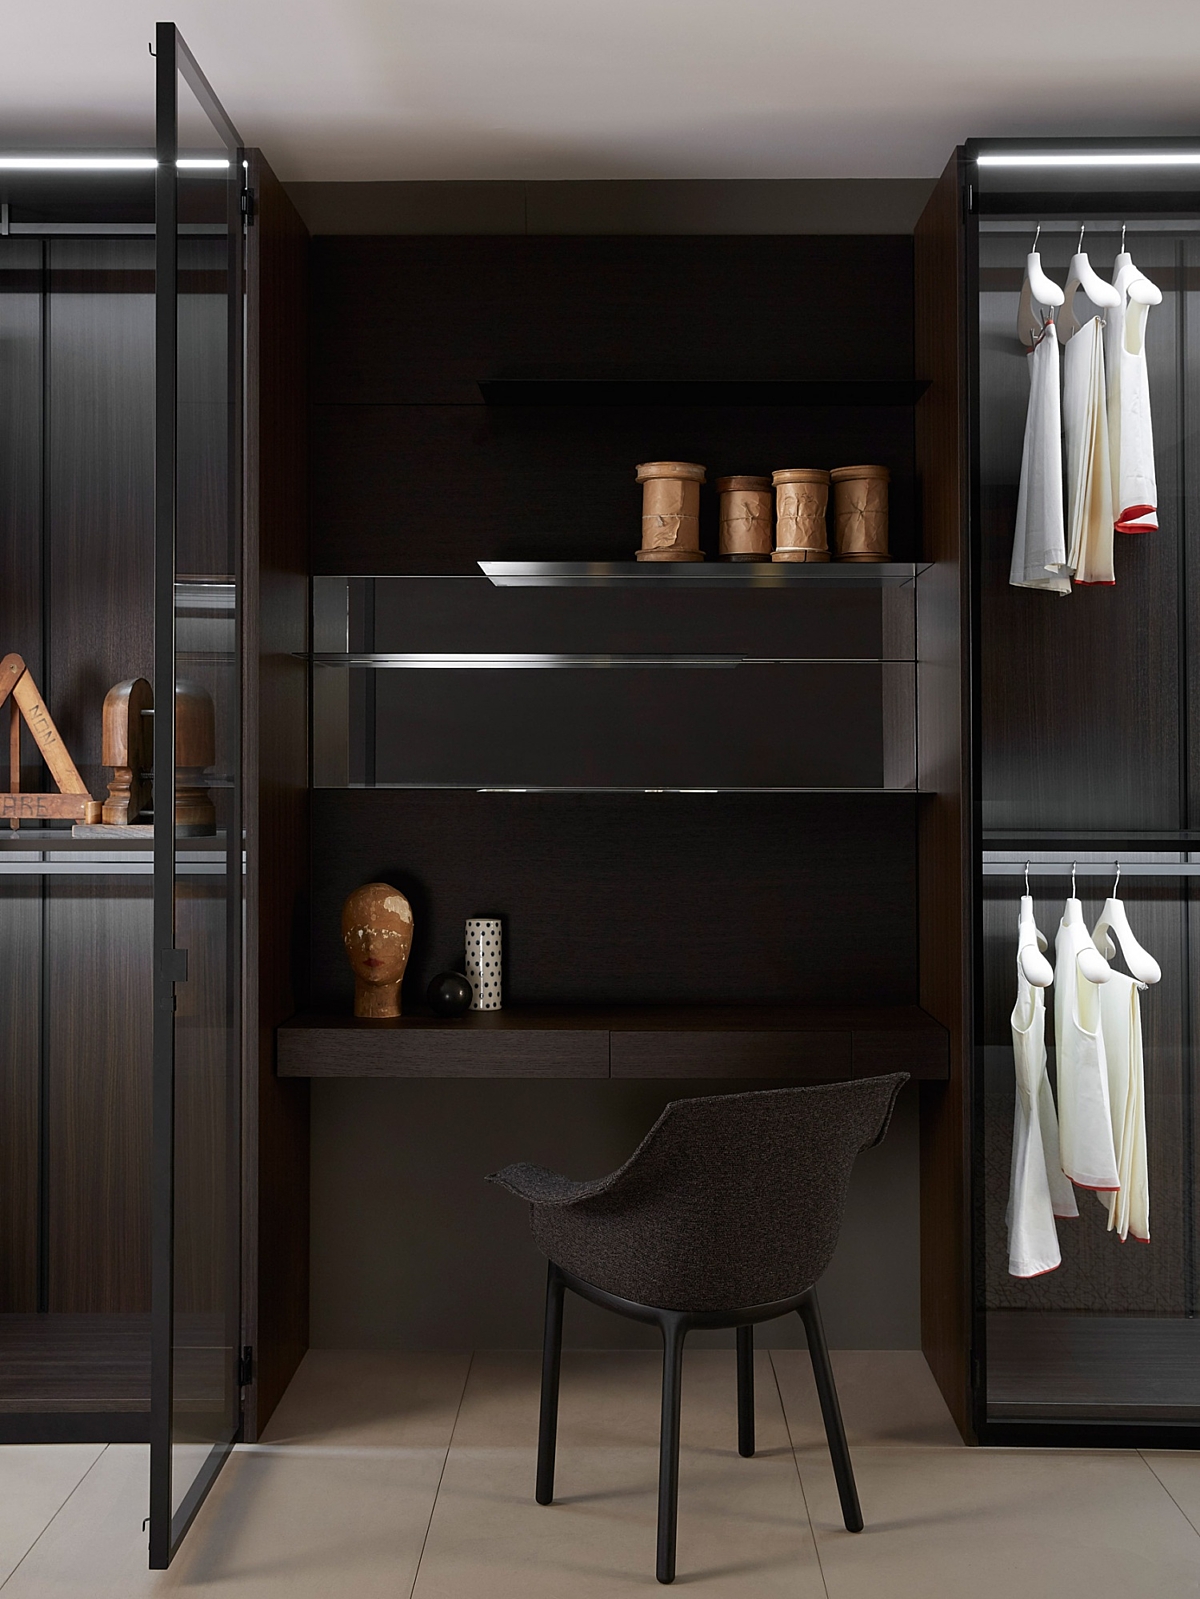 Strakke lijnen, geometrische vormen en functionaliteit karakteriseren de veelal moduleerbare meubelen van Porro.